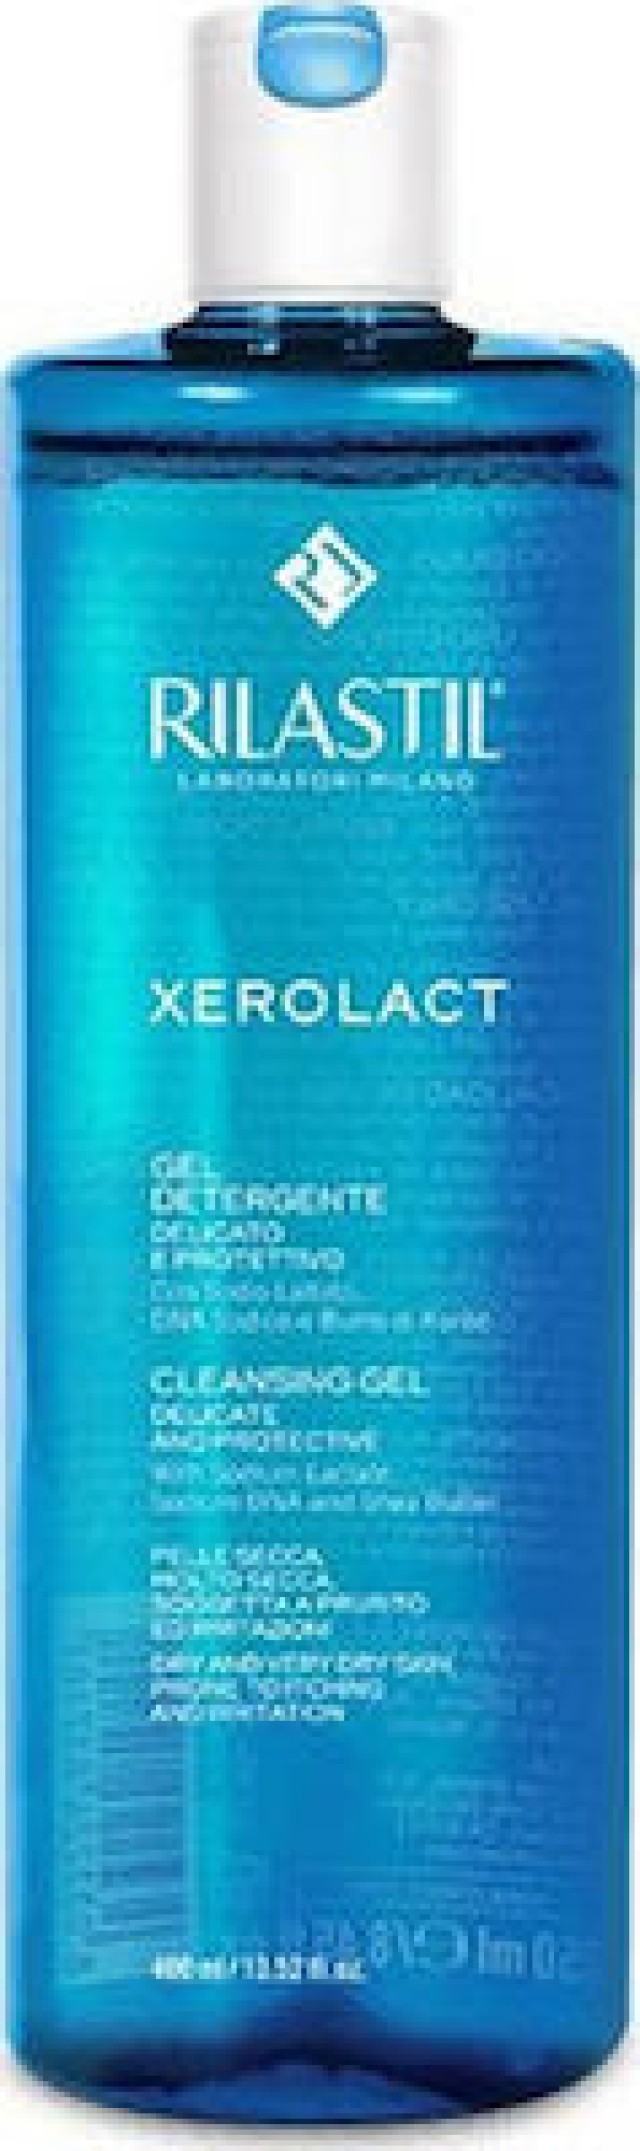 Rilastil Xerolat Cleansing Gel Καθαριστικό Gel Προσώπου, 400ml